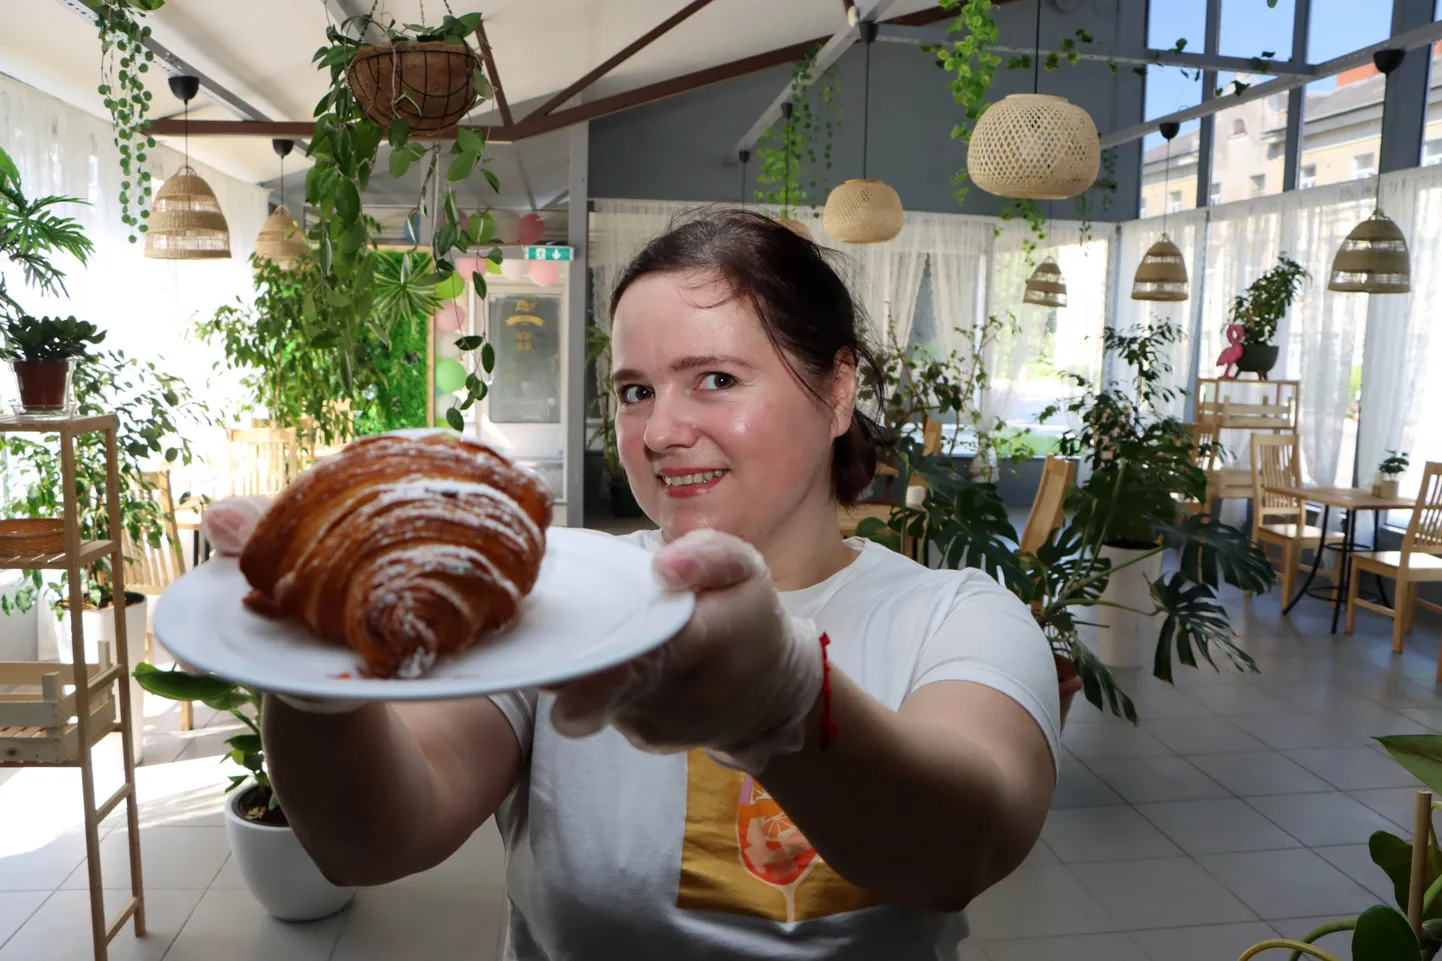 Начинающий предприниматель Оксана Угринчук верит, что ее круассаны полюбят кохтлаярвесцы, а новое кафе подарит им положительные эмоции.